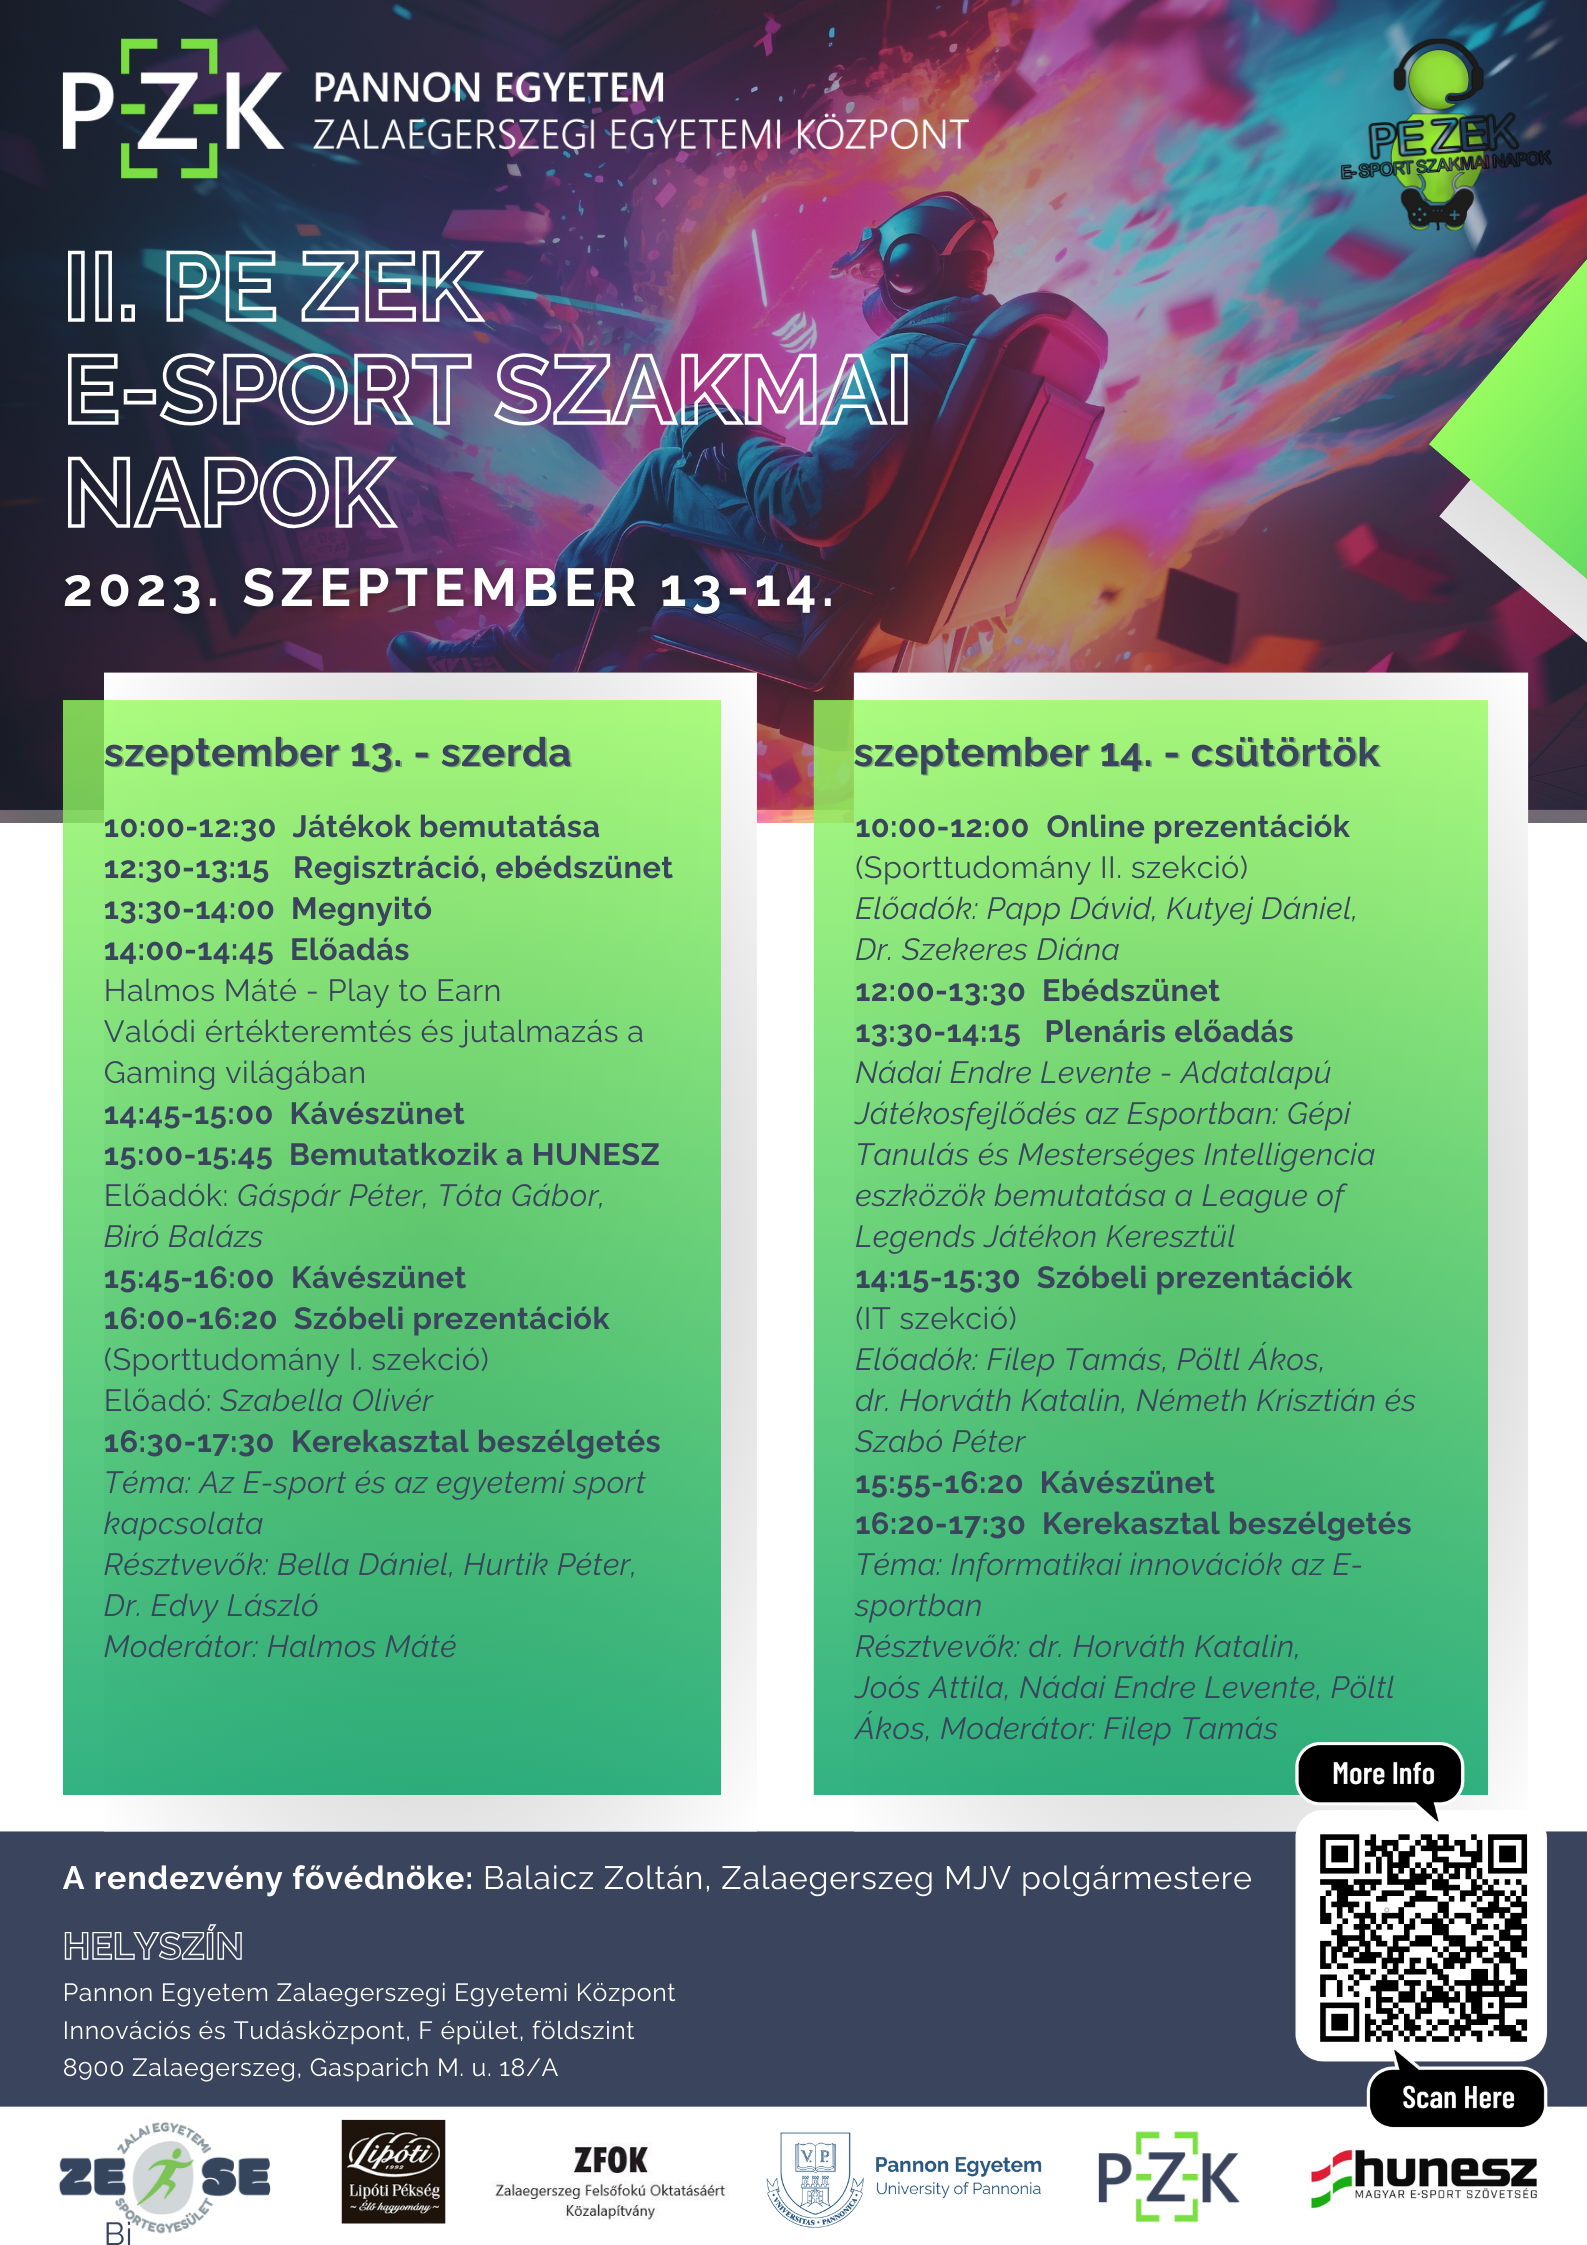 E-sport_Szakmai_Napok_2023_plakát_copy_copy.png